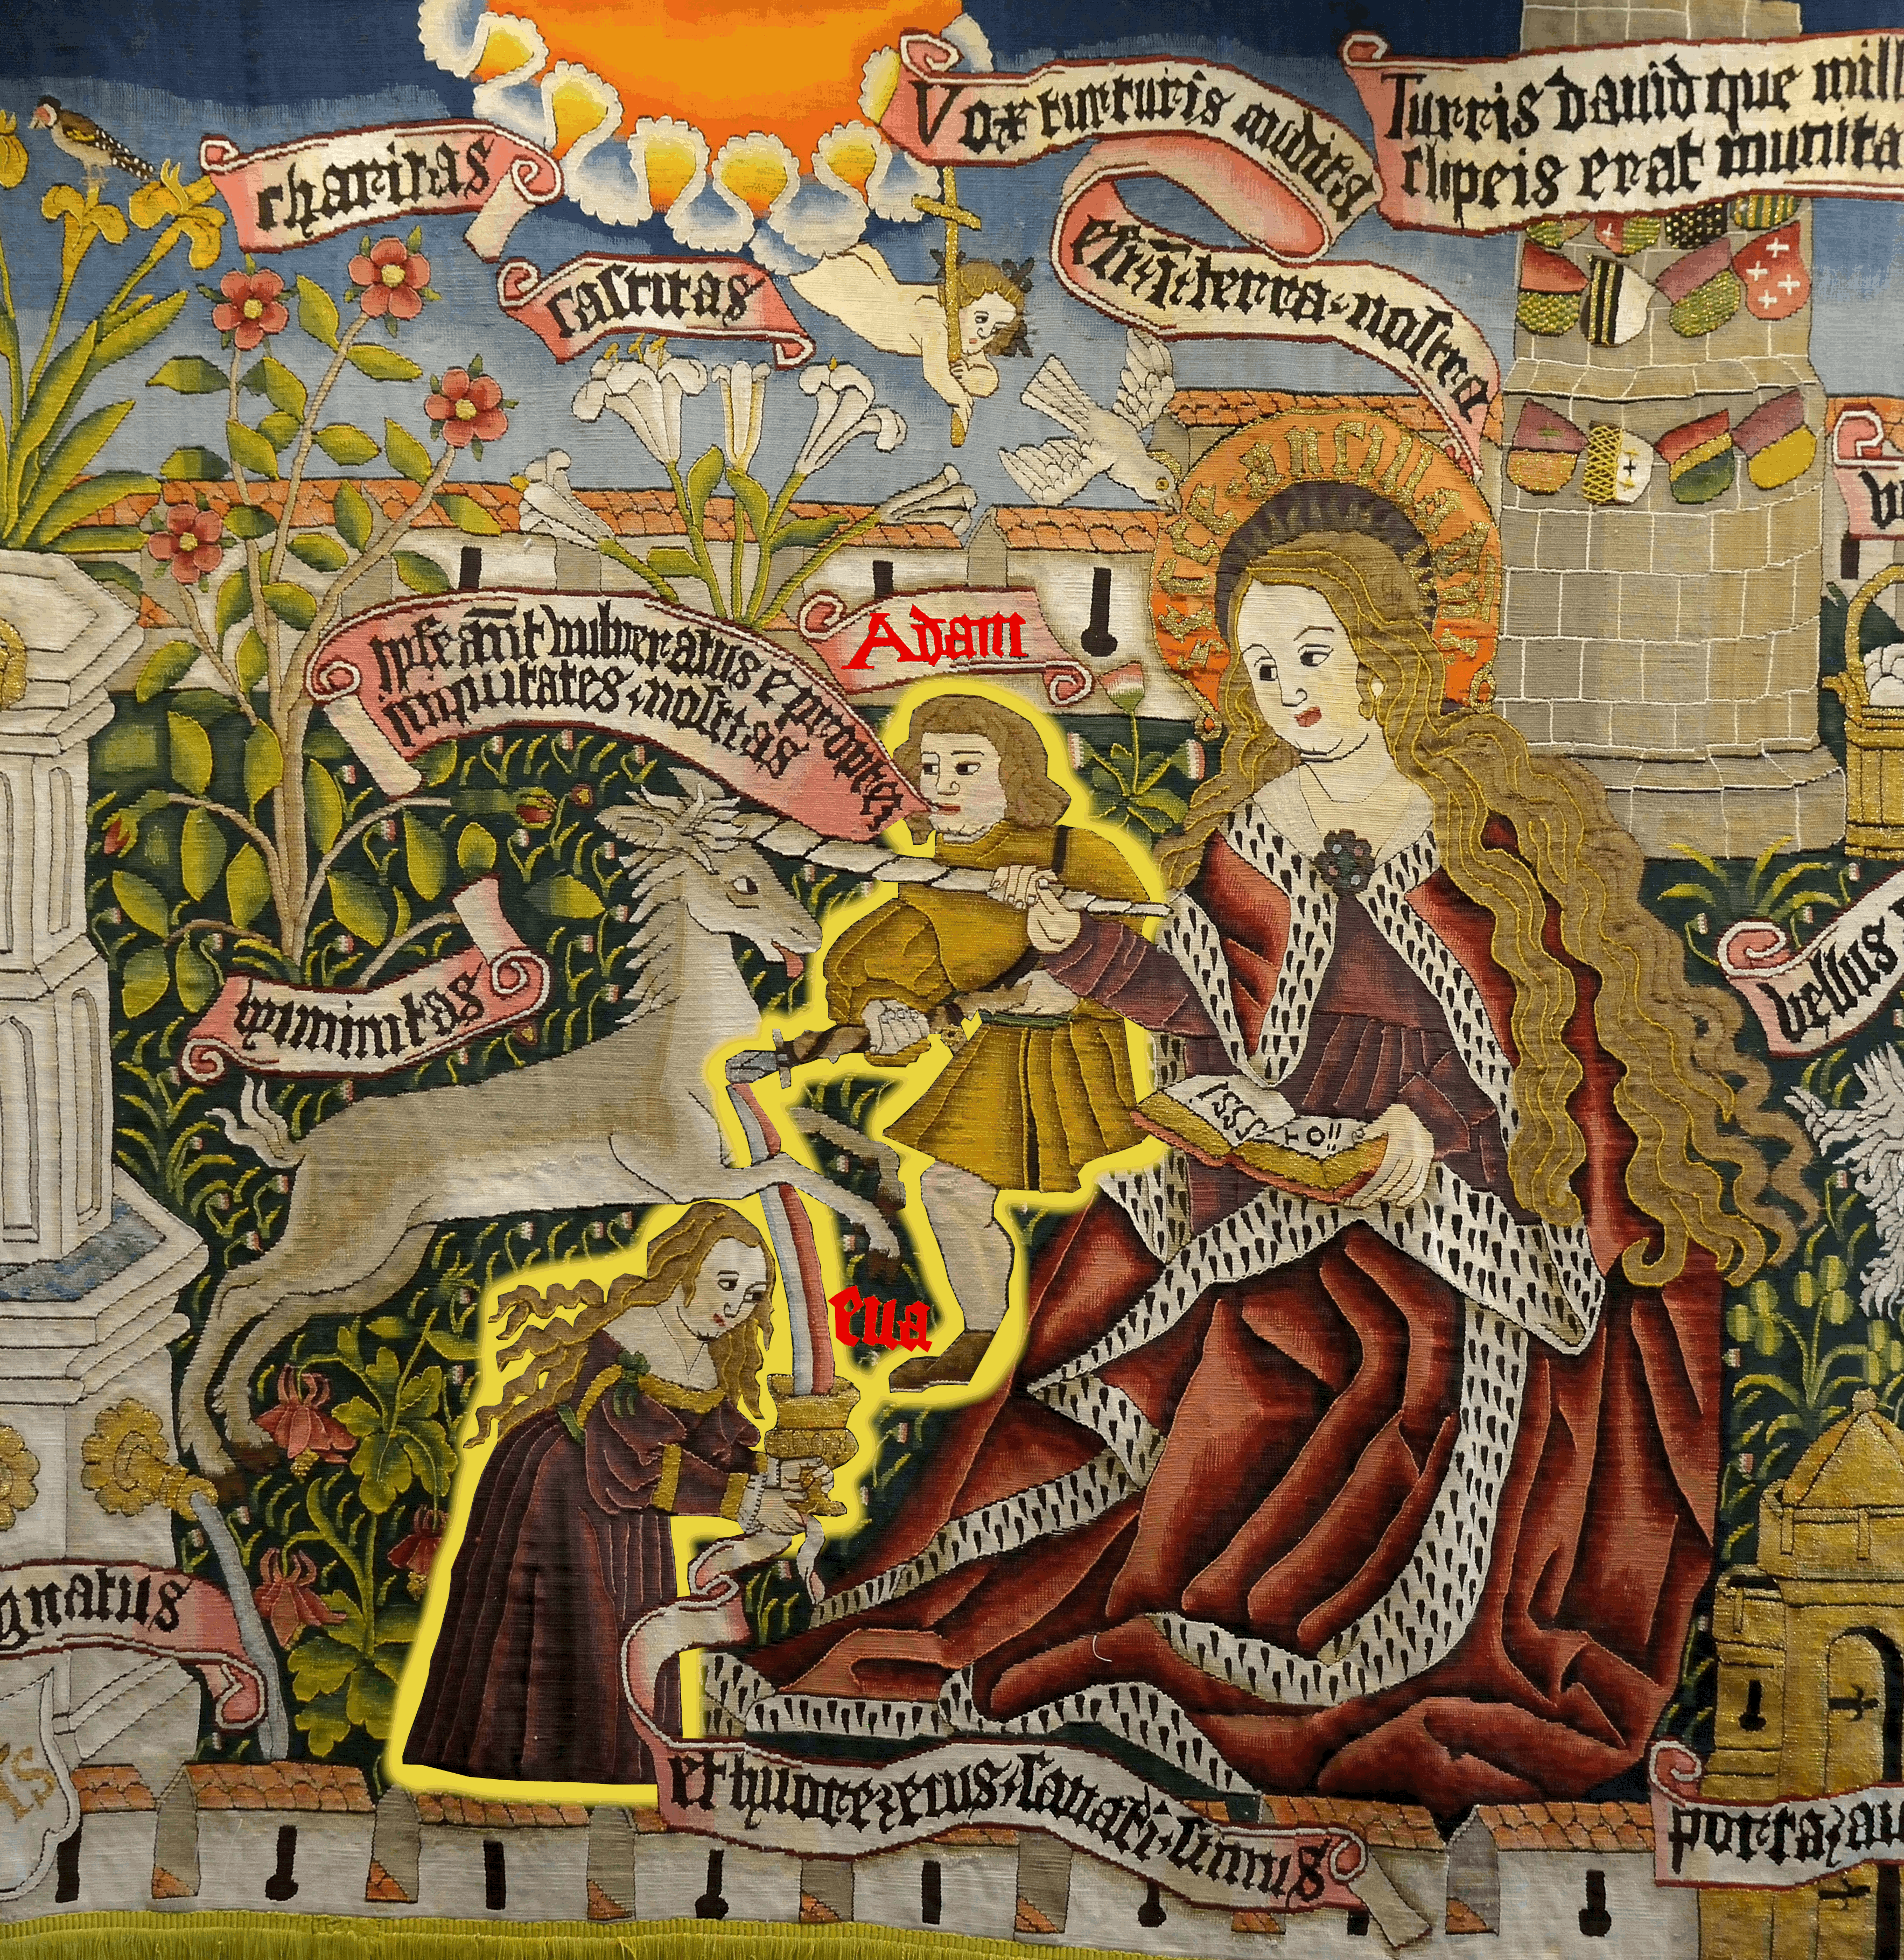 Historischer Wandteppich. Matte Farben. Verschiedene biblische Personen samt Einhorn abgebildet.